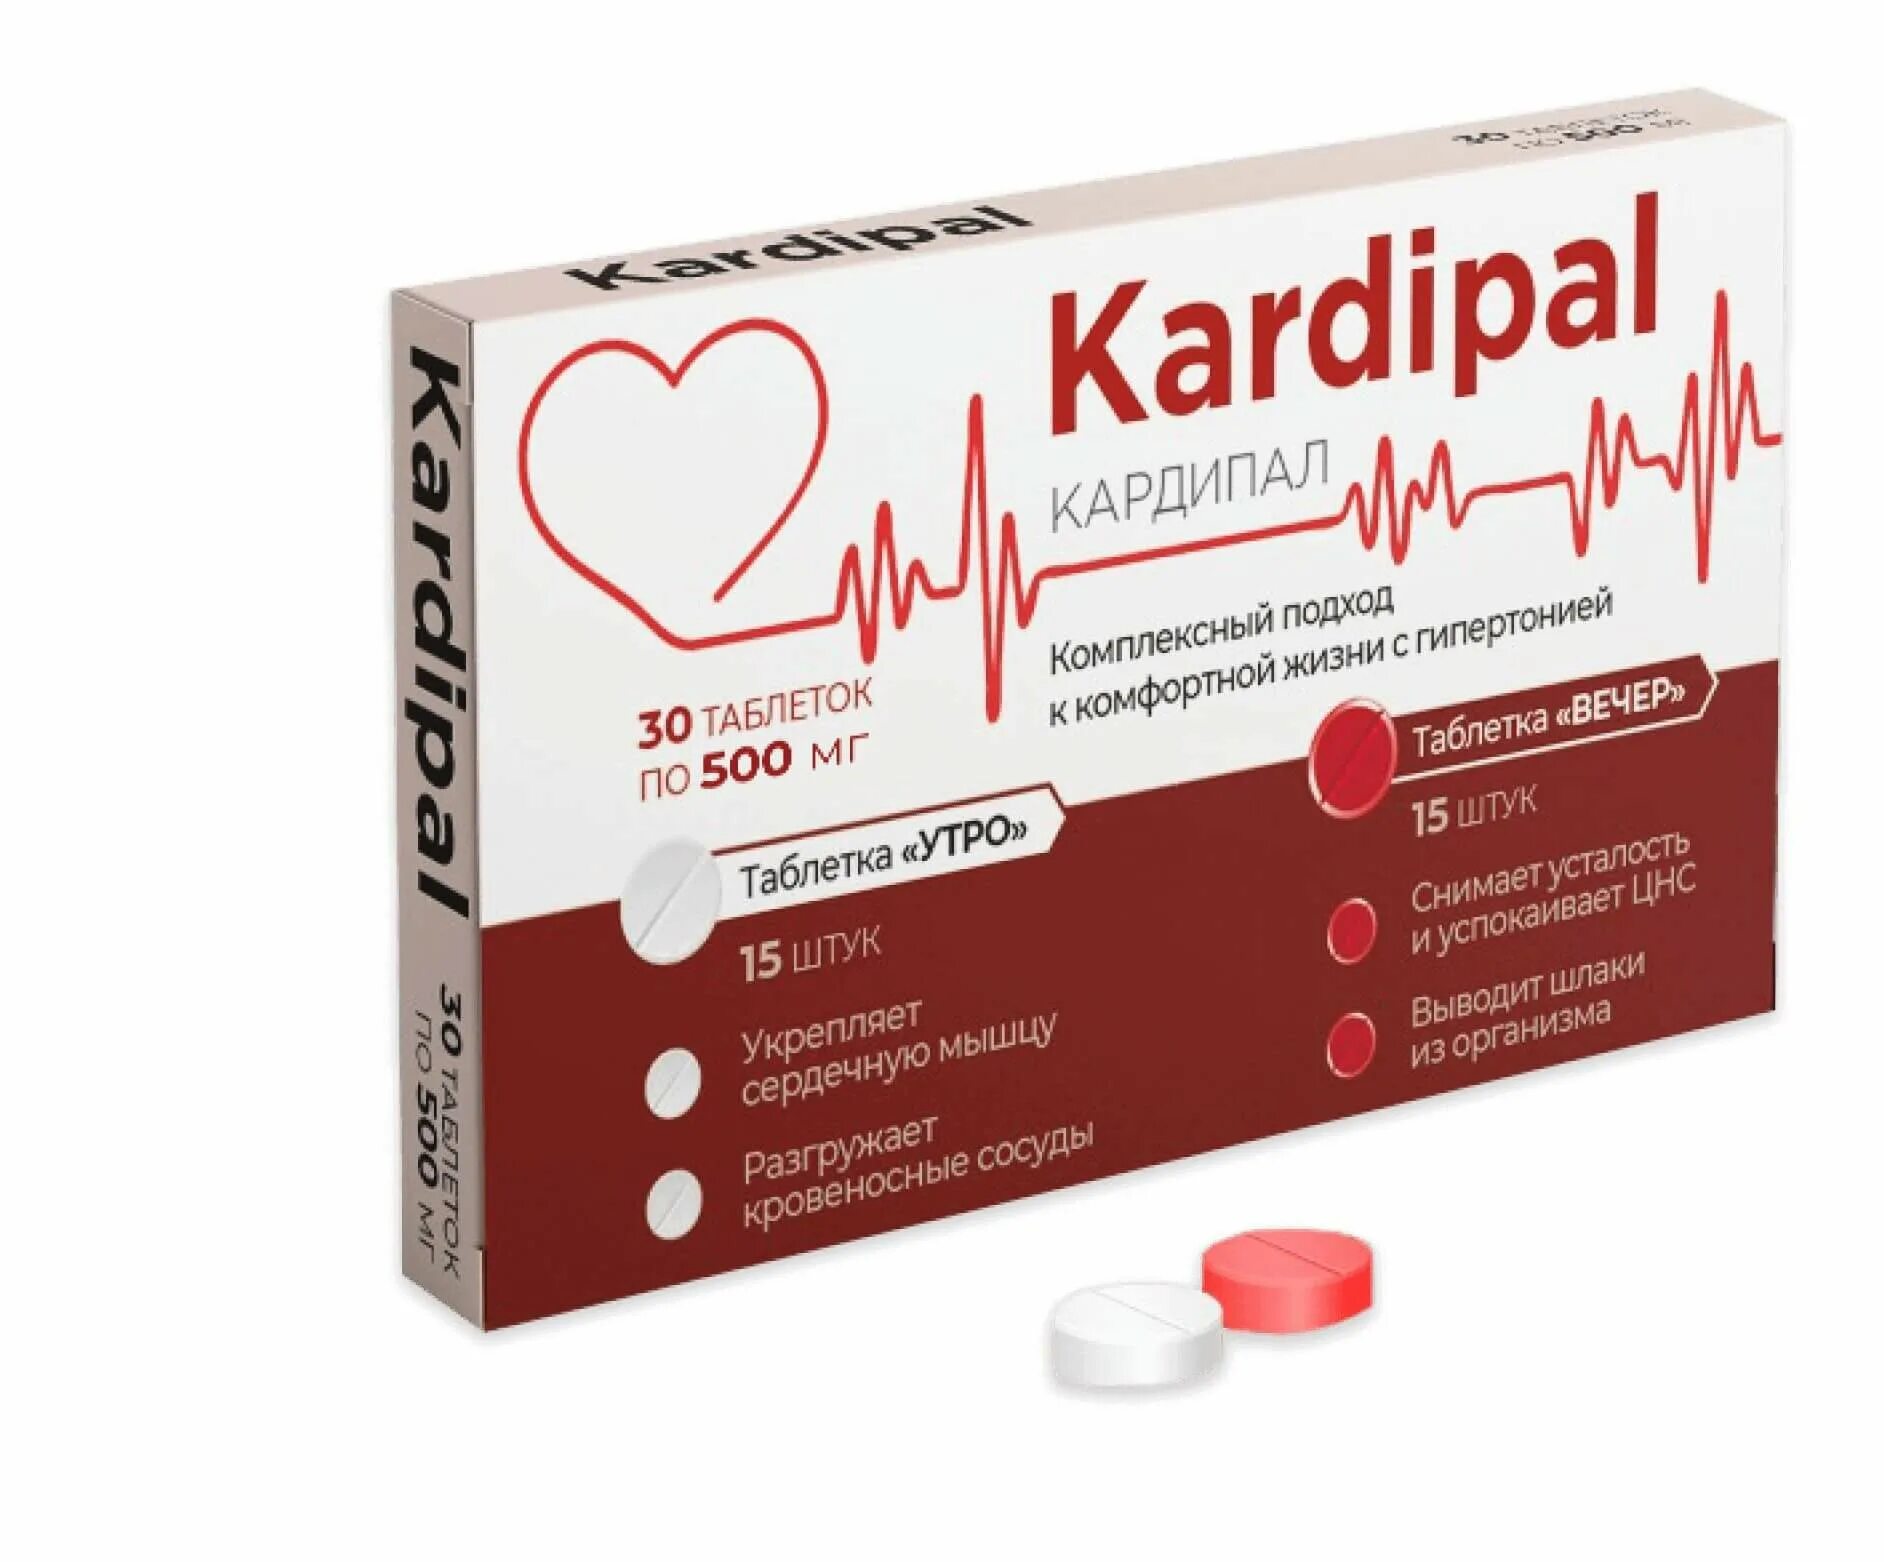 Таблетки для артериального давления. Препараты от гипертонии. Таблетки для стабилизации артериального давления. Kardipal.